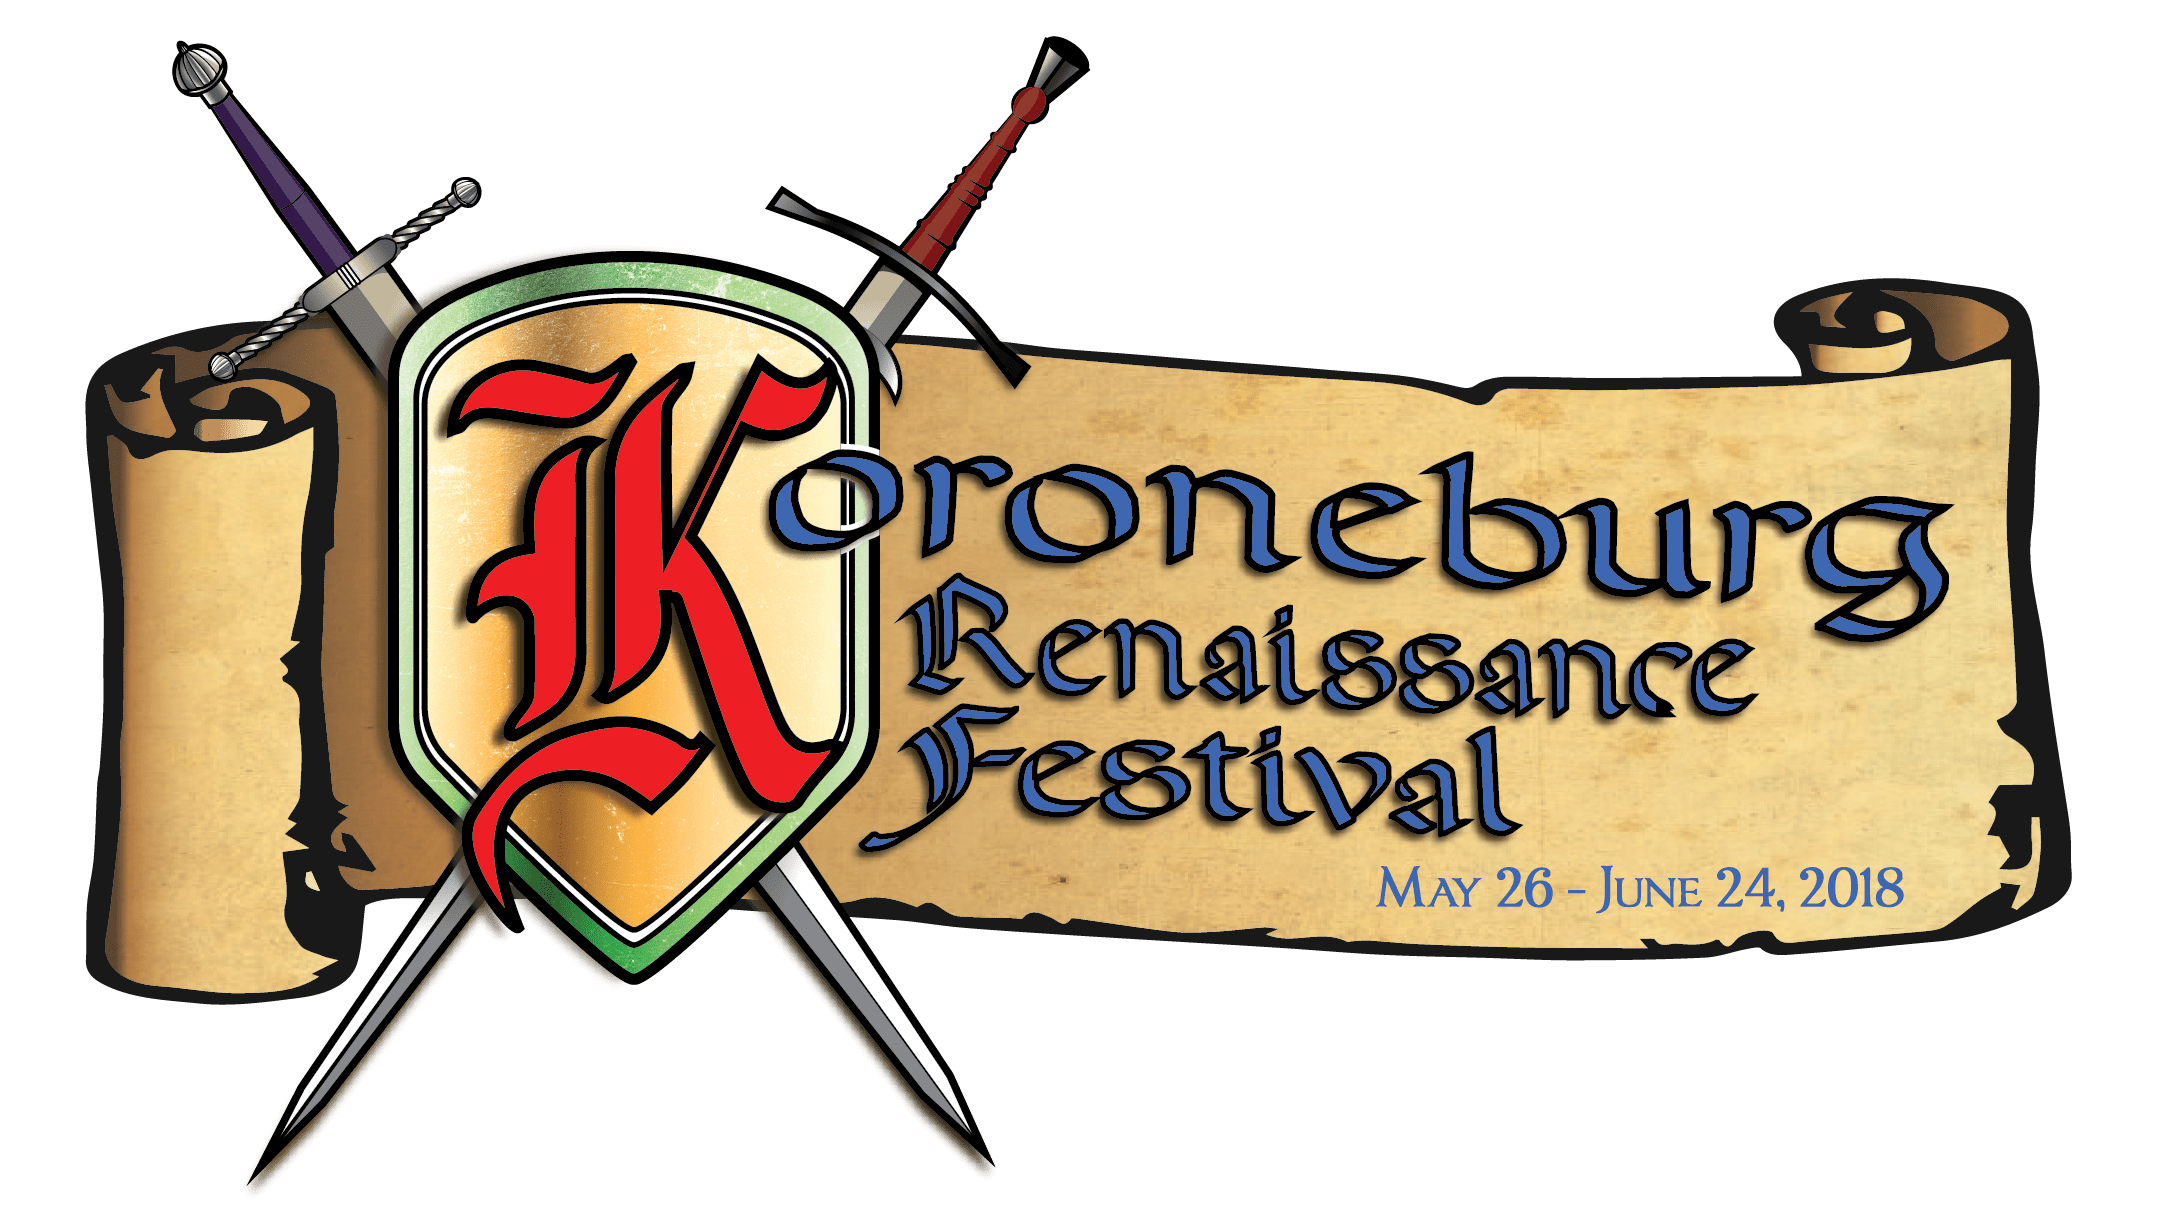 Koroneburg Renaissance Festival